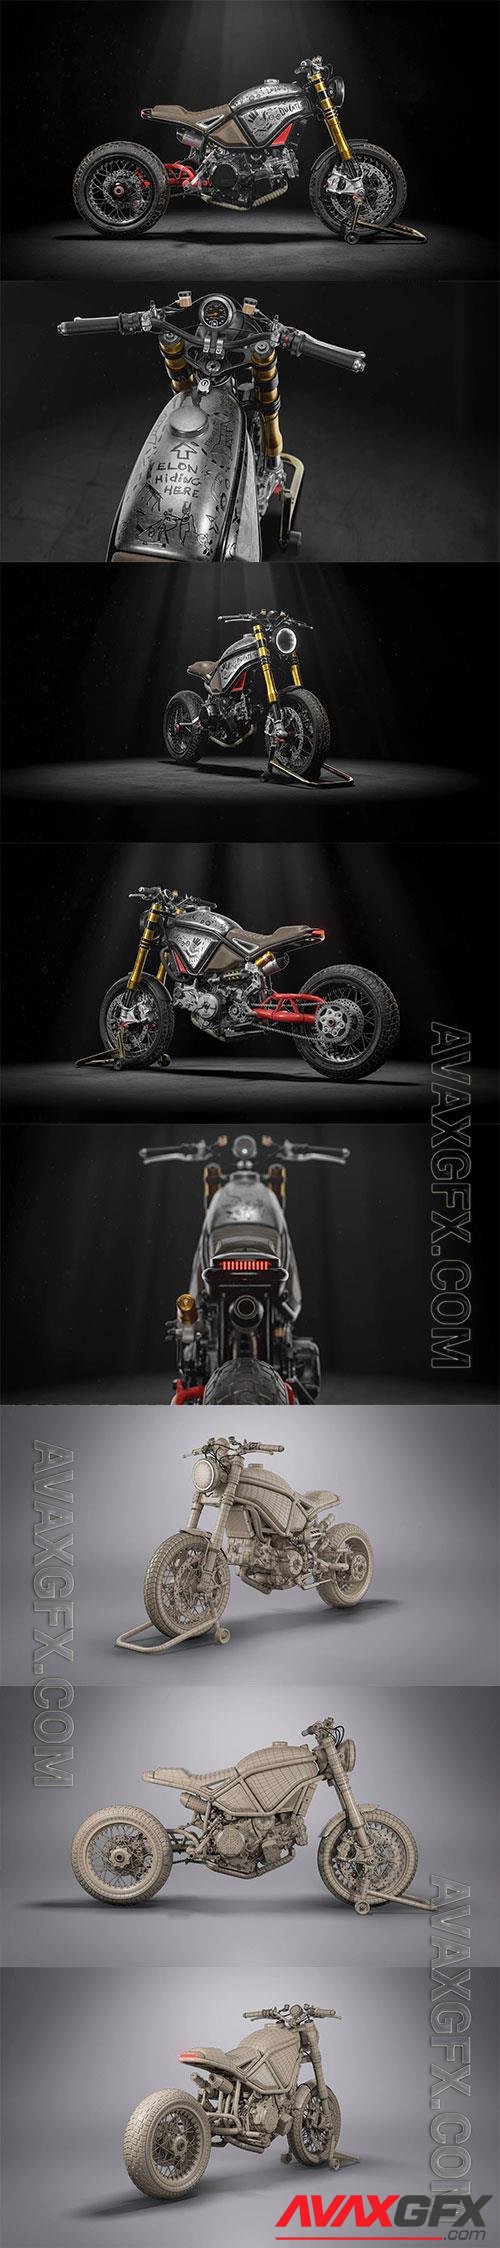 Ducati Motorcycle Custom Scrambler 3D Model